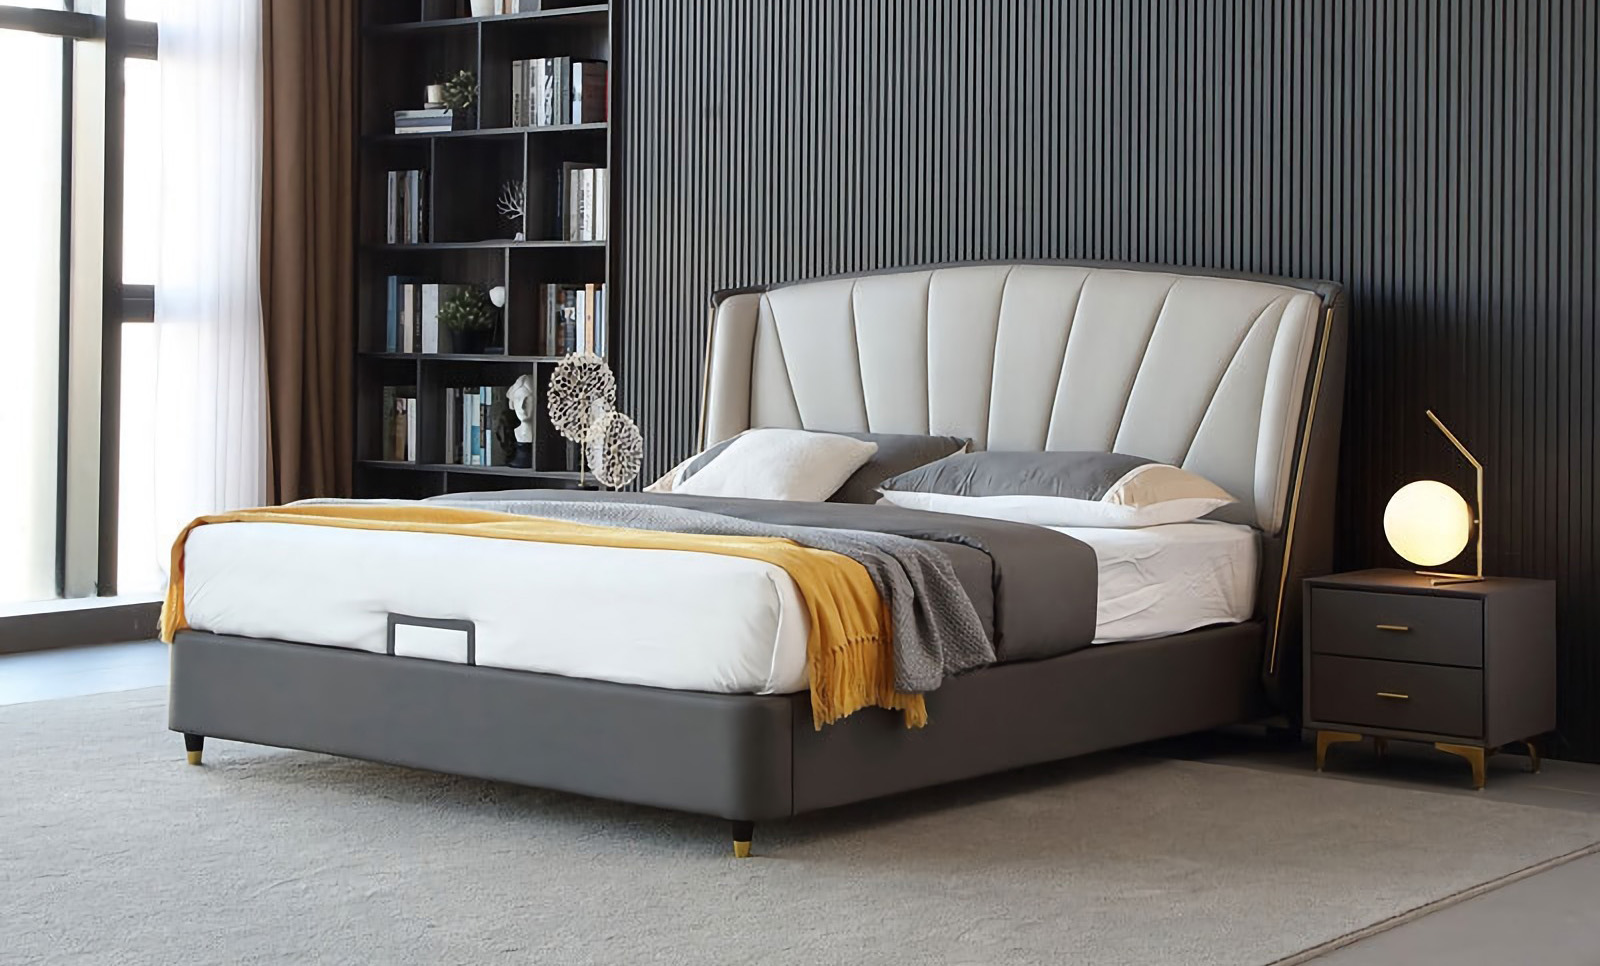 Caratteristiche del design del letto minimalista moderno del letto minimalista moderno.